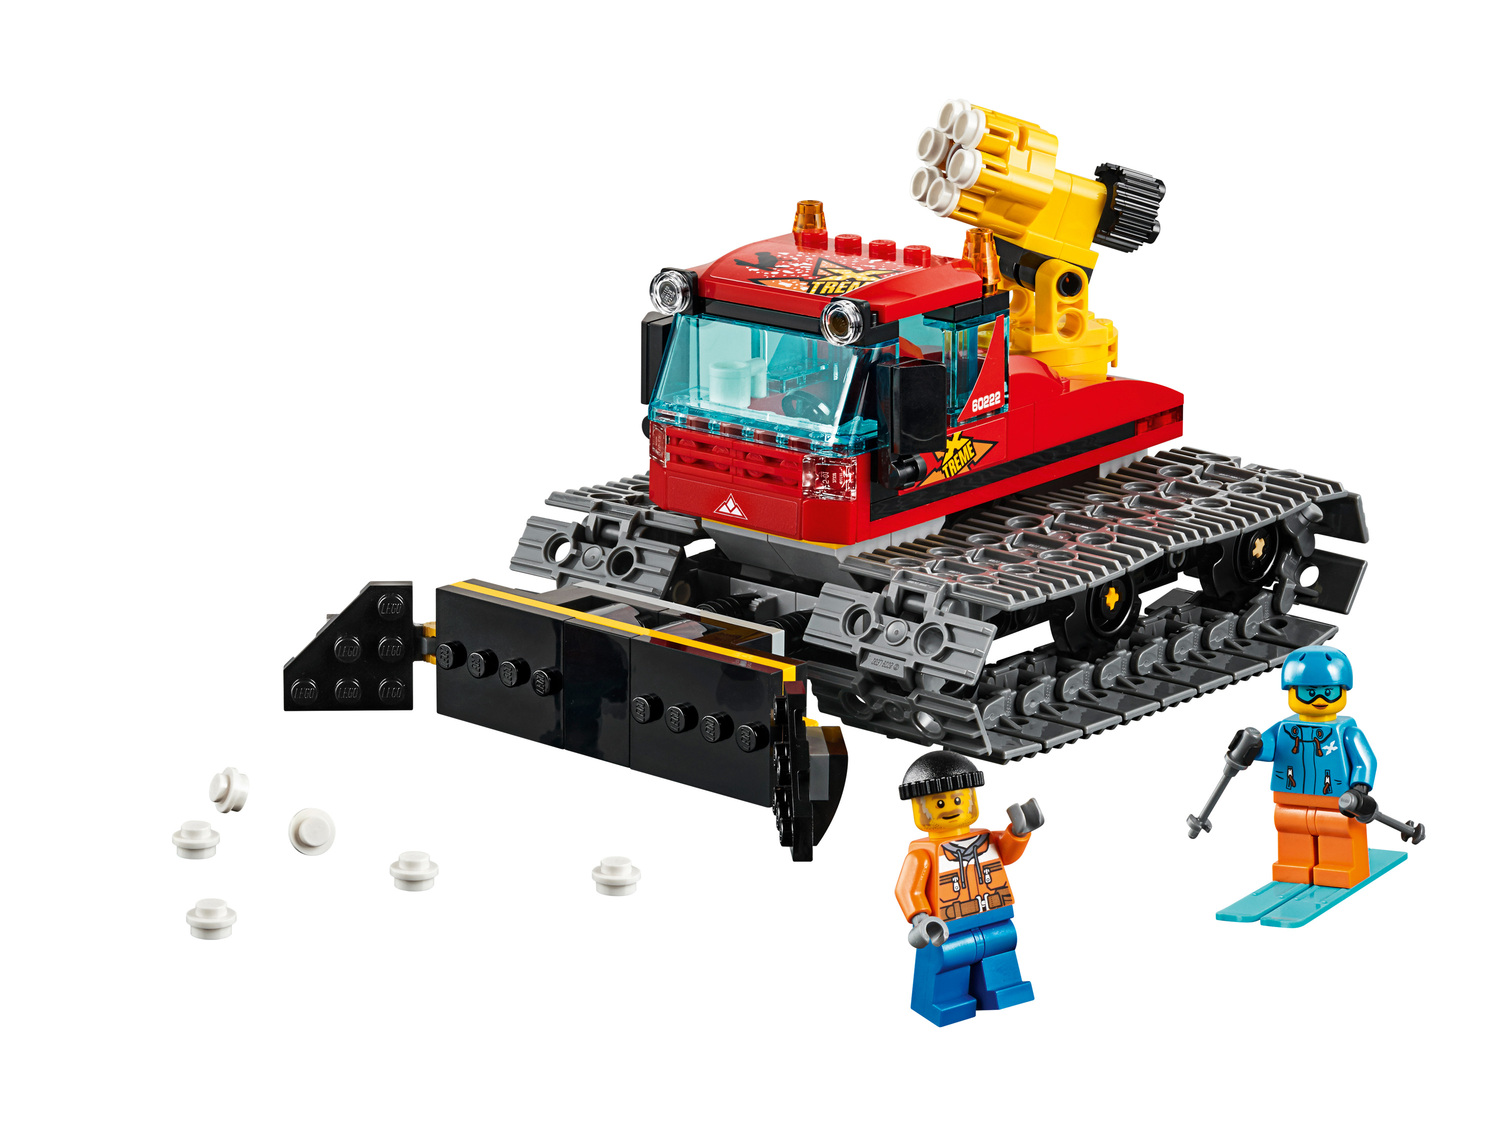 Klocki Lego 60222 Lego, cena 64,90 PLN  
-  Pług gąsienicowy
Opis